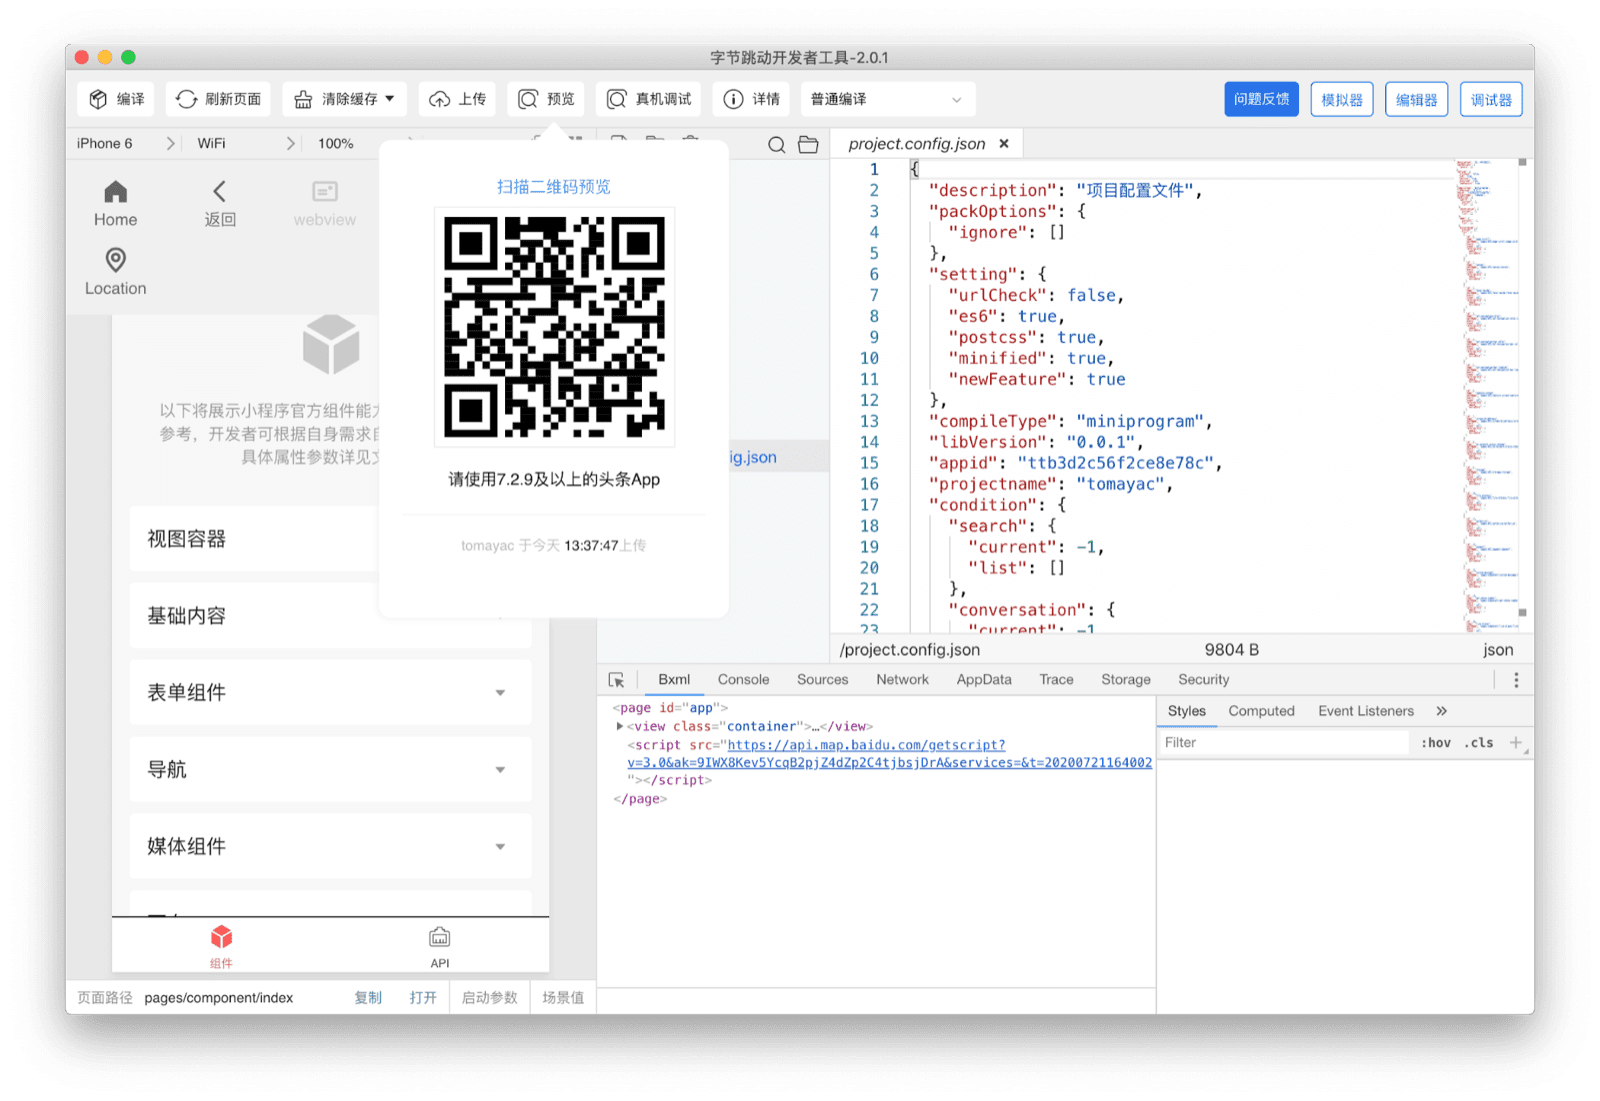 ByteDance DevTools mostrando um QR code que o usuário pode ler com o app Douyin para conferir o miniapp atual no dispositivo.